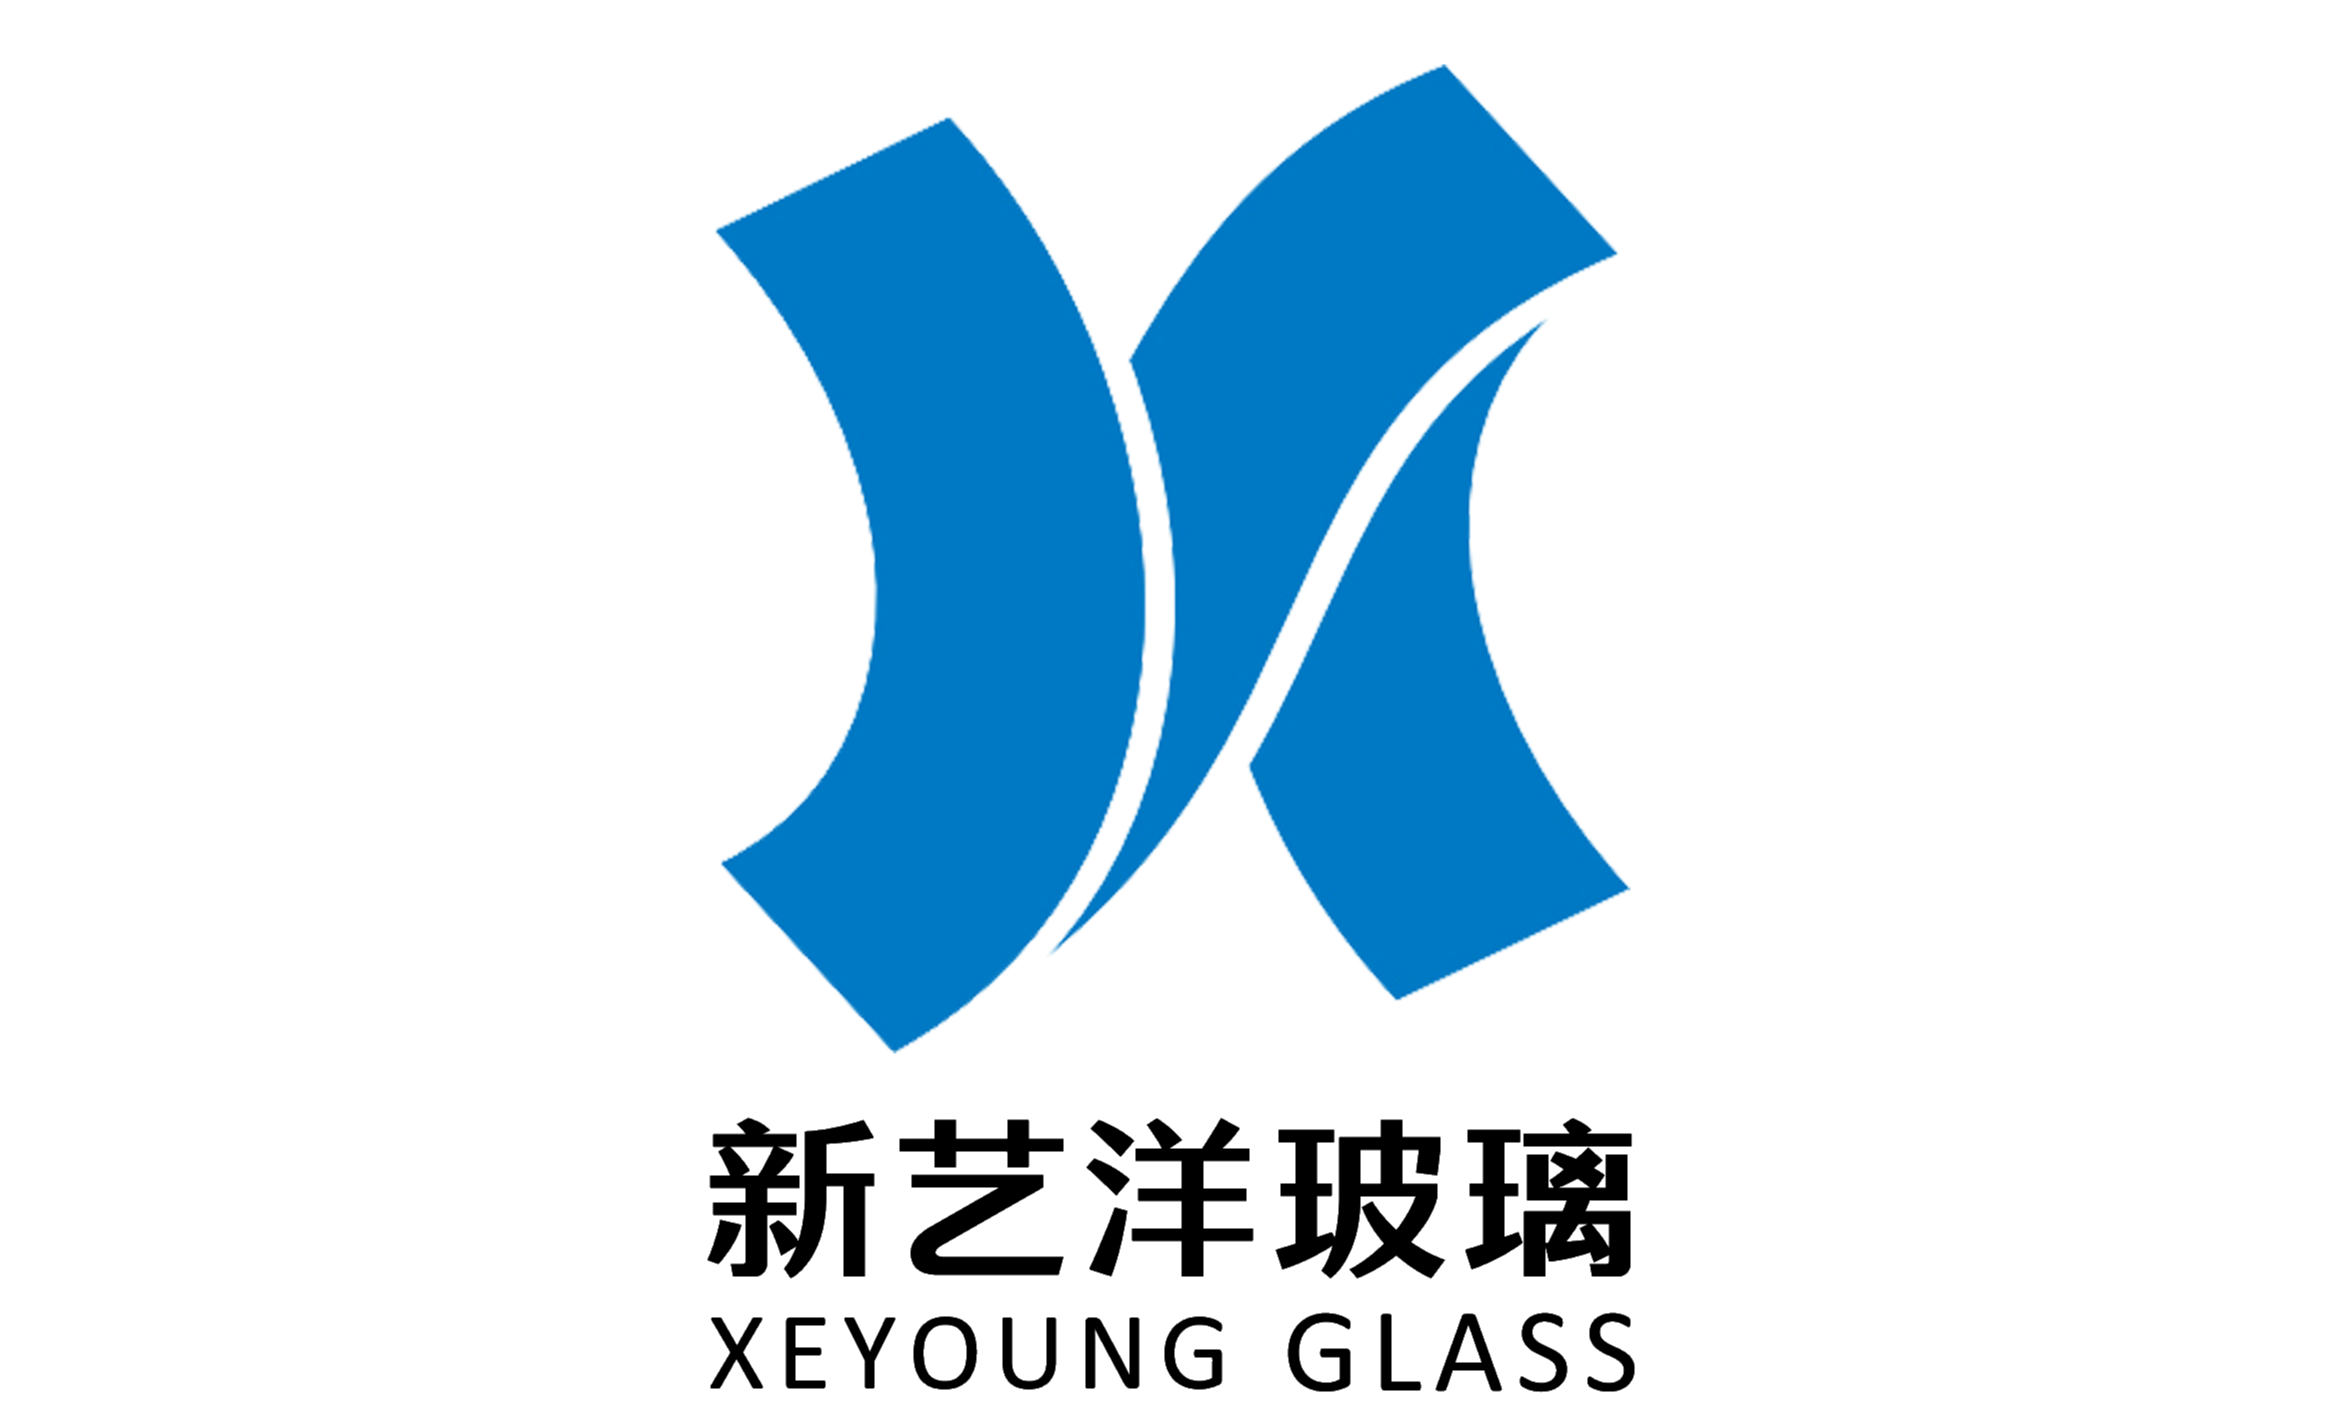 廣東新藝洋玻璃科技有限公司